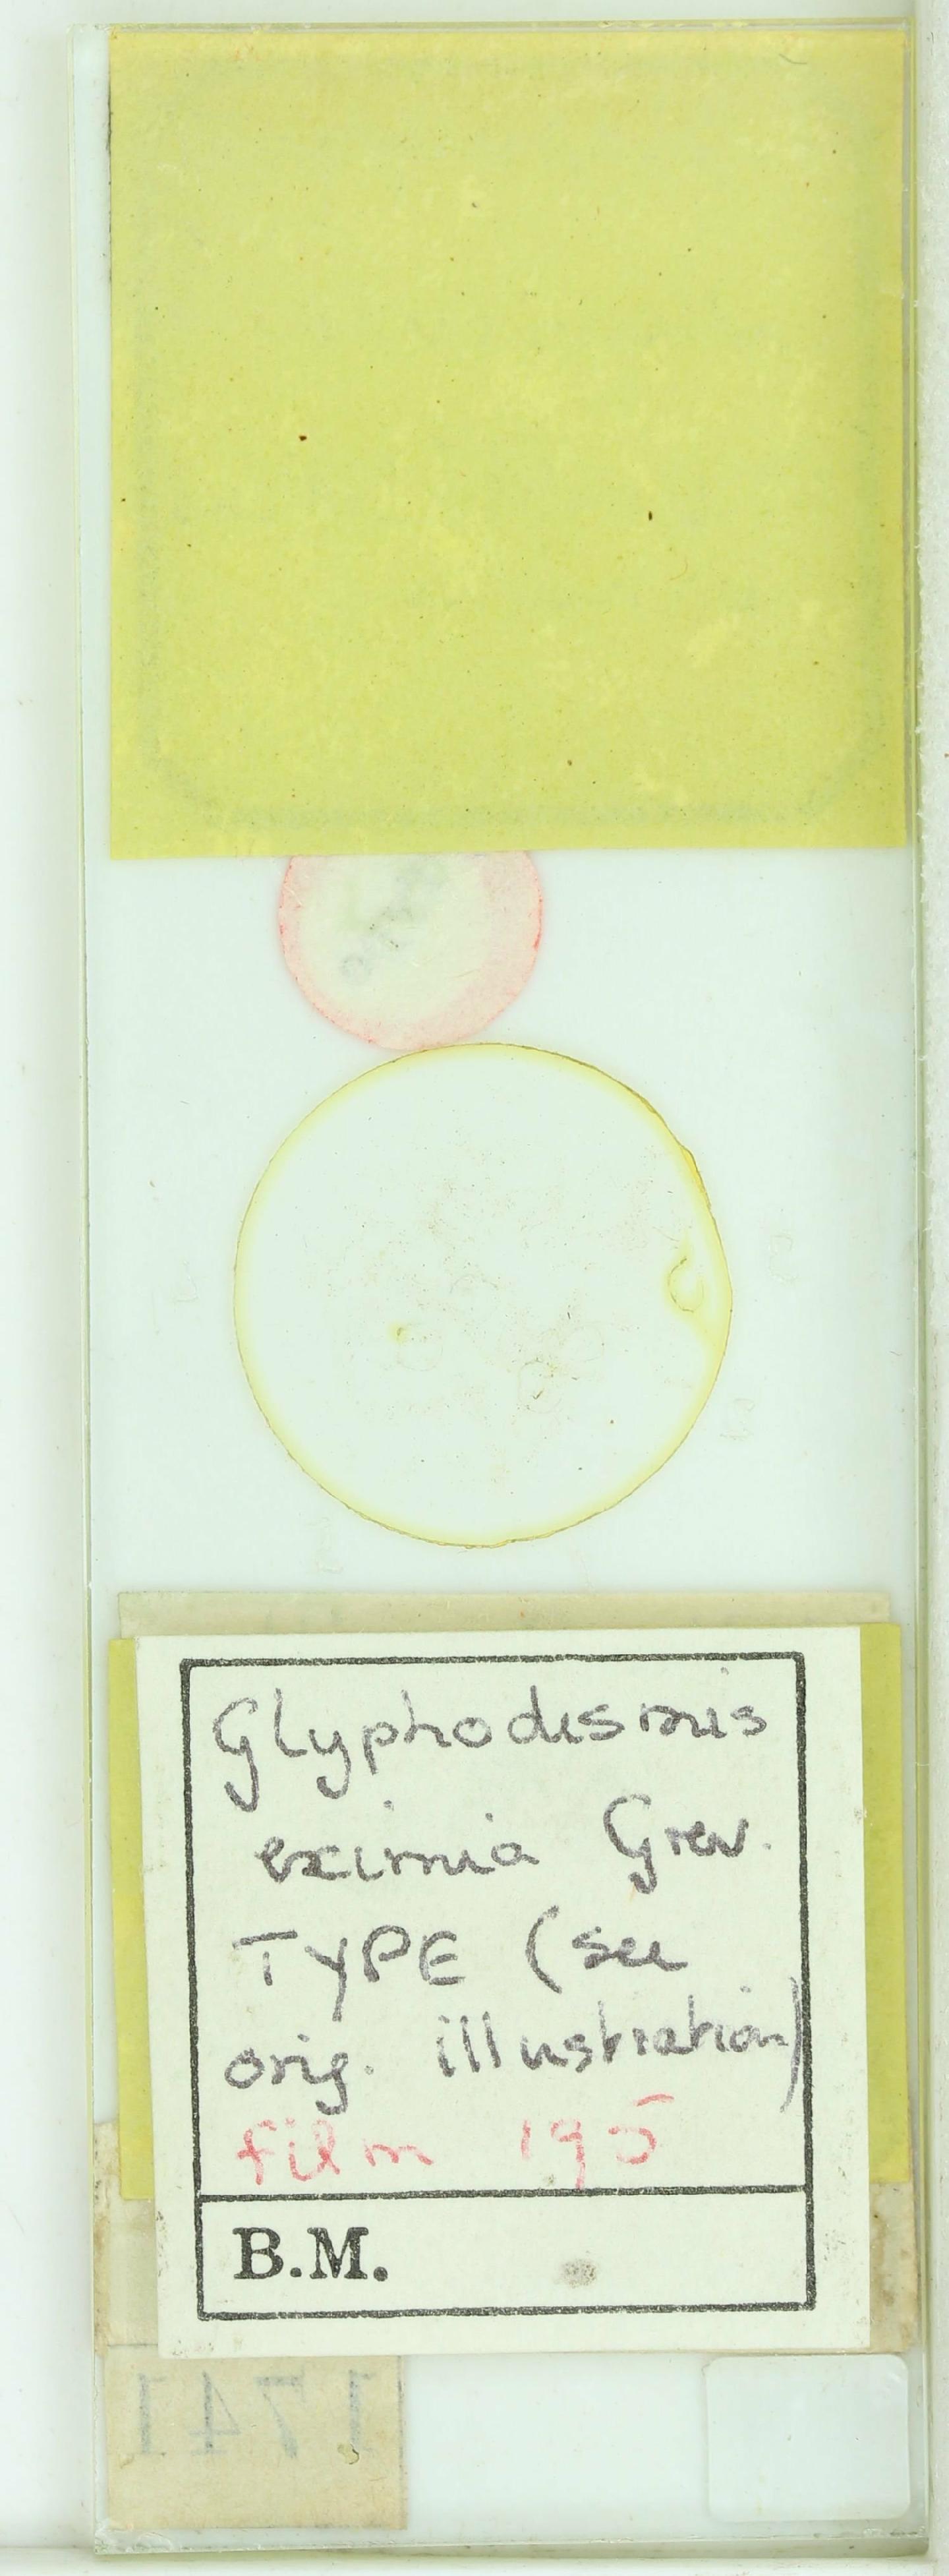 To NHMUK collection (Glyphodesmis eximia Grev.; Syntype; NHMUK:ecatalogue:4734439)